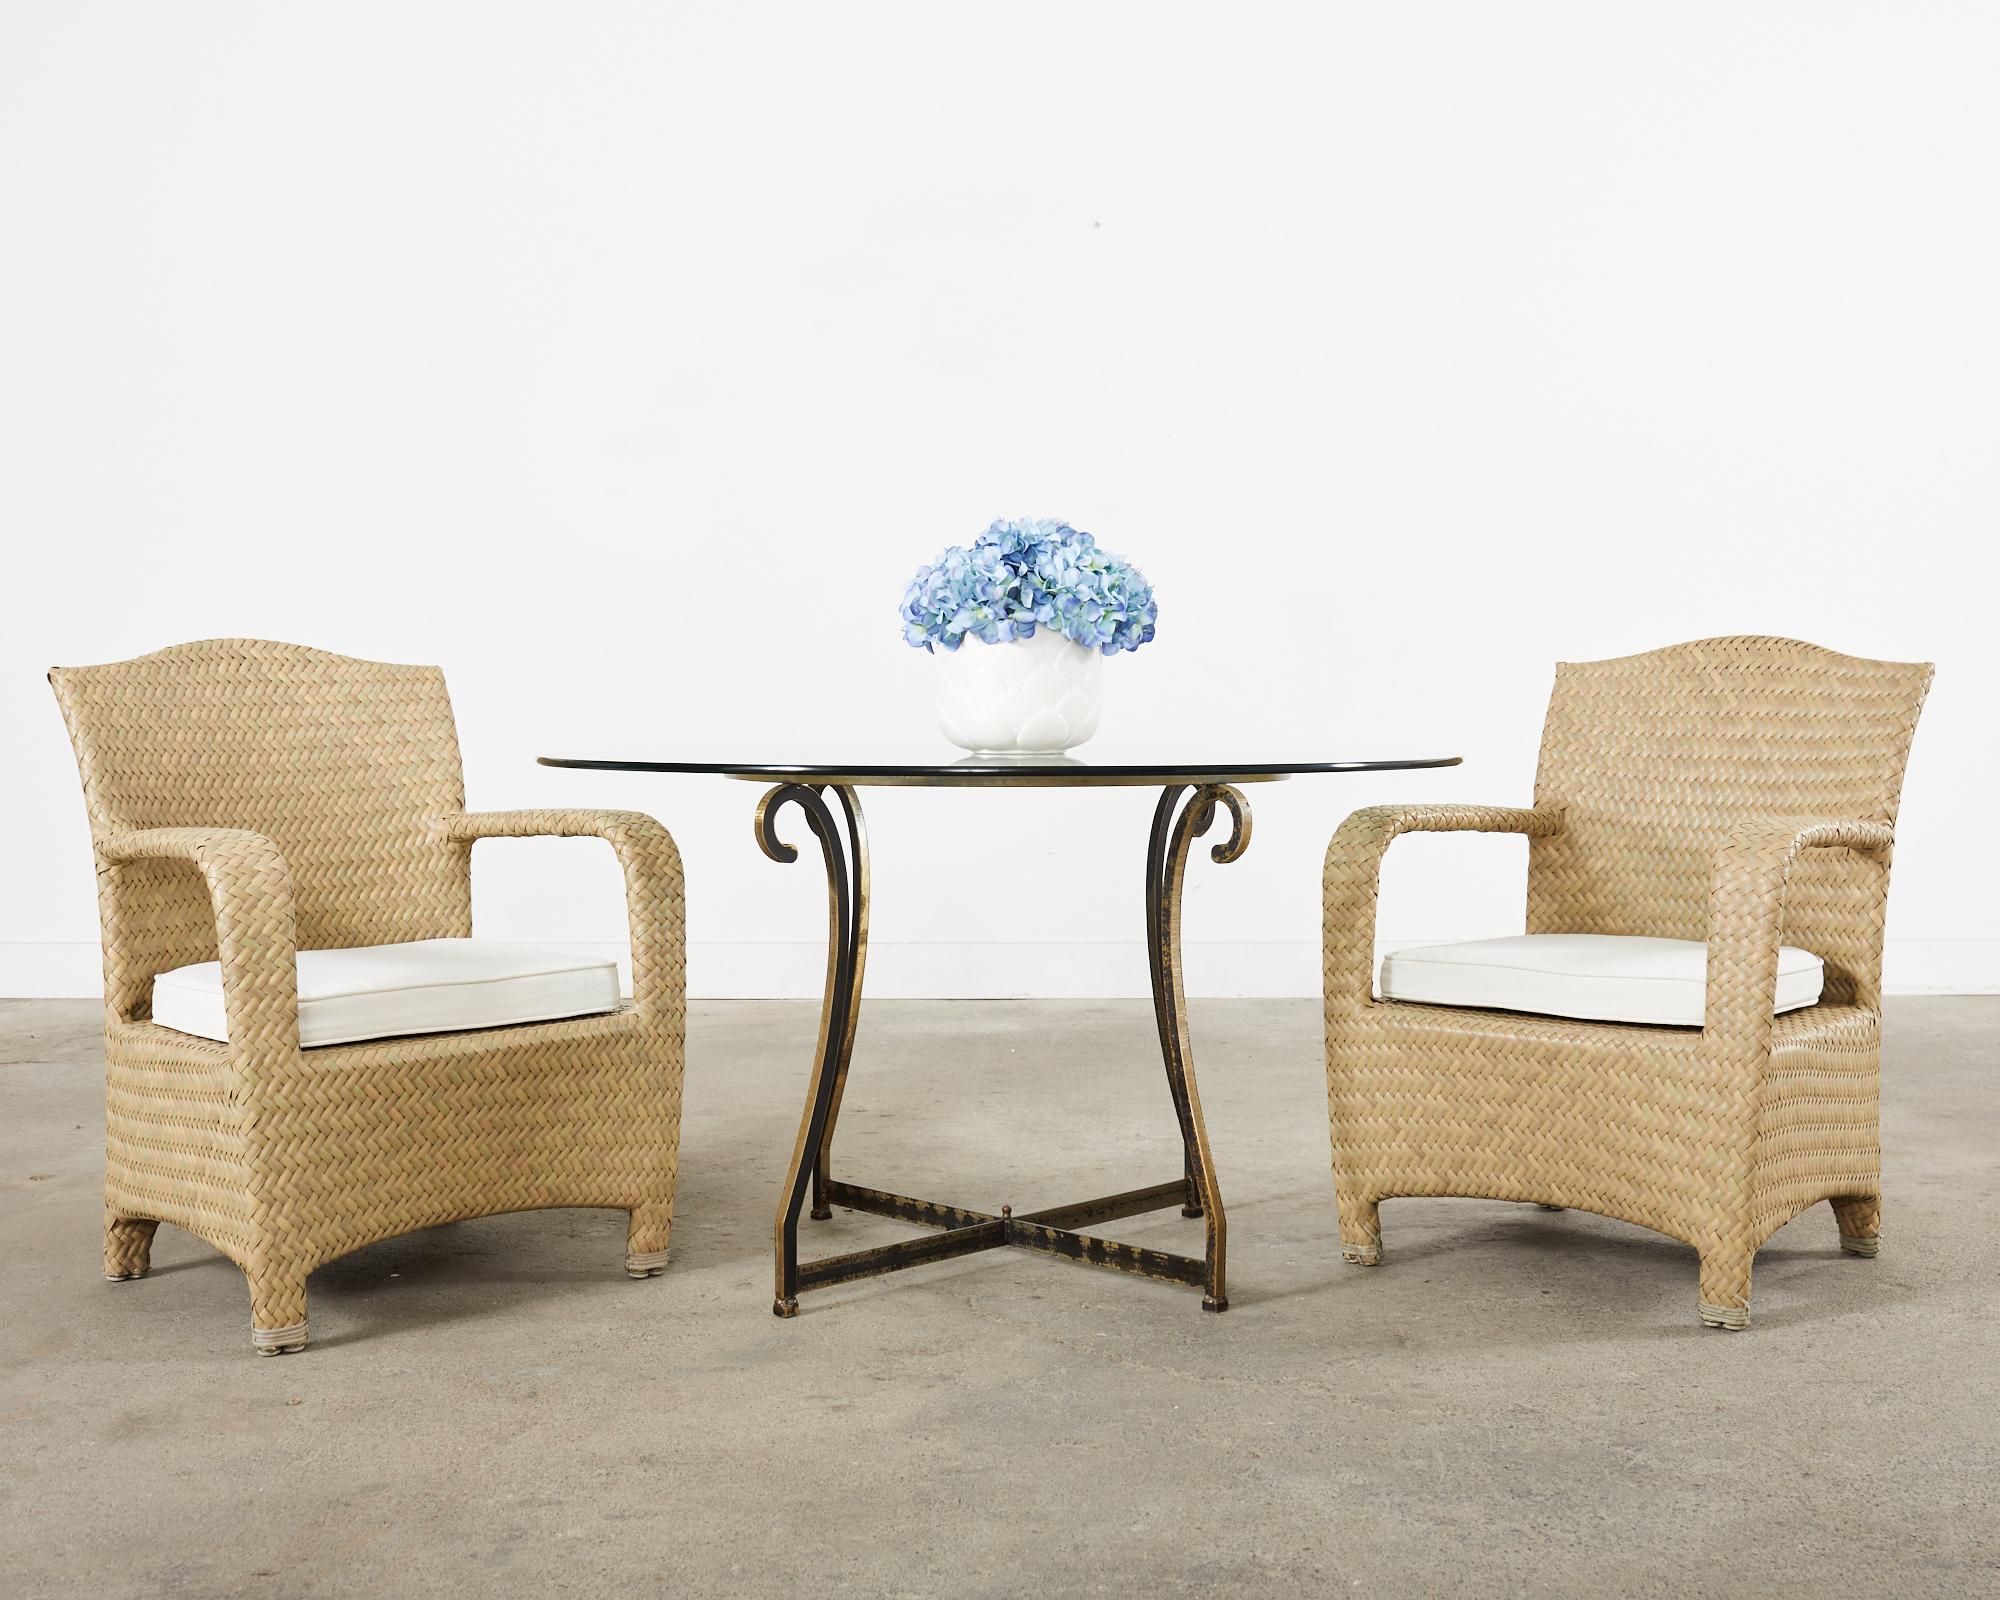 Seltener Satz von acht großen Sesseln für Terrasse und Garten aus der Havana Collection'S von Brown Jordan. Das Set besteht aus einem robusten Aluminiumrahmen, der mit einem geflochtenen Harzgeflecht in stilvollen erdfarbenen Tönen ummantelt ist.